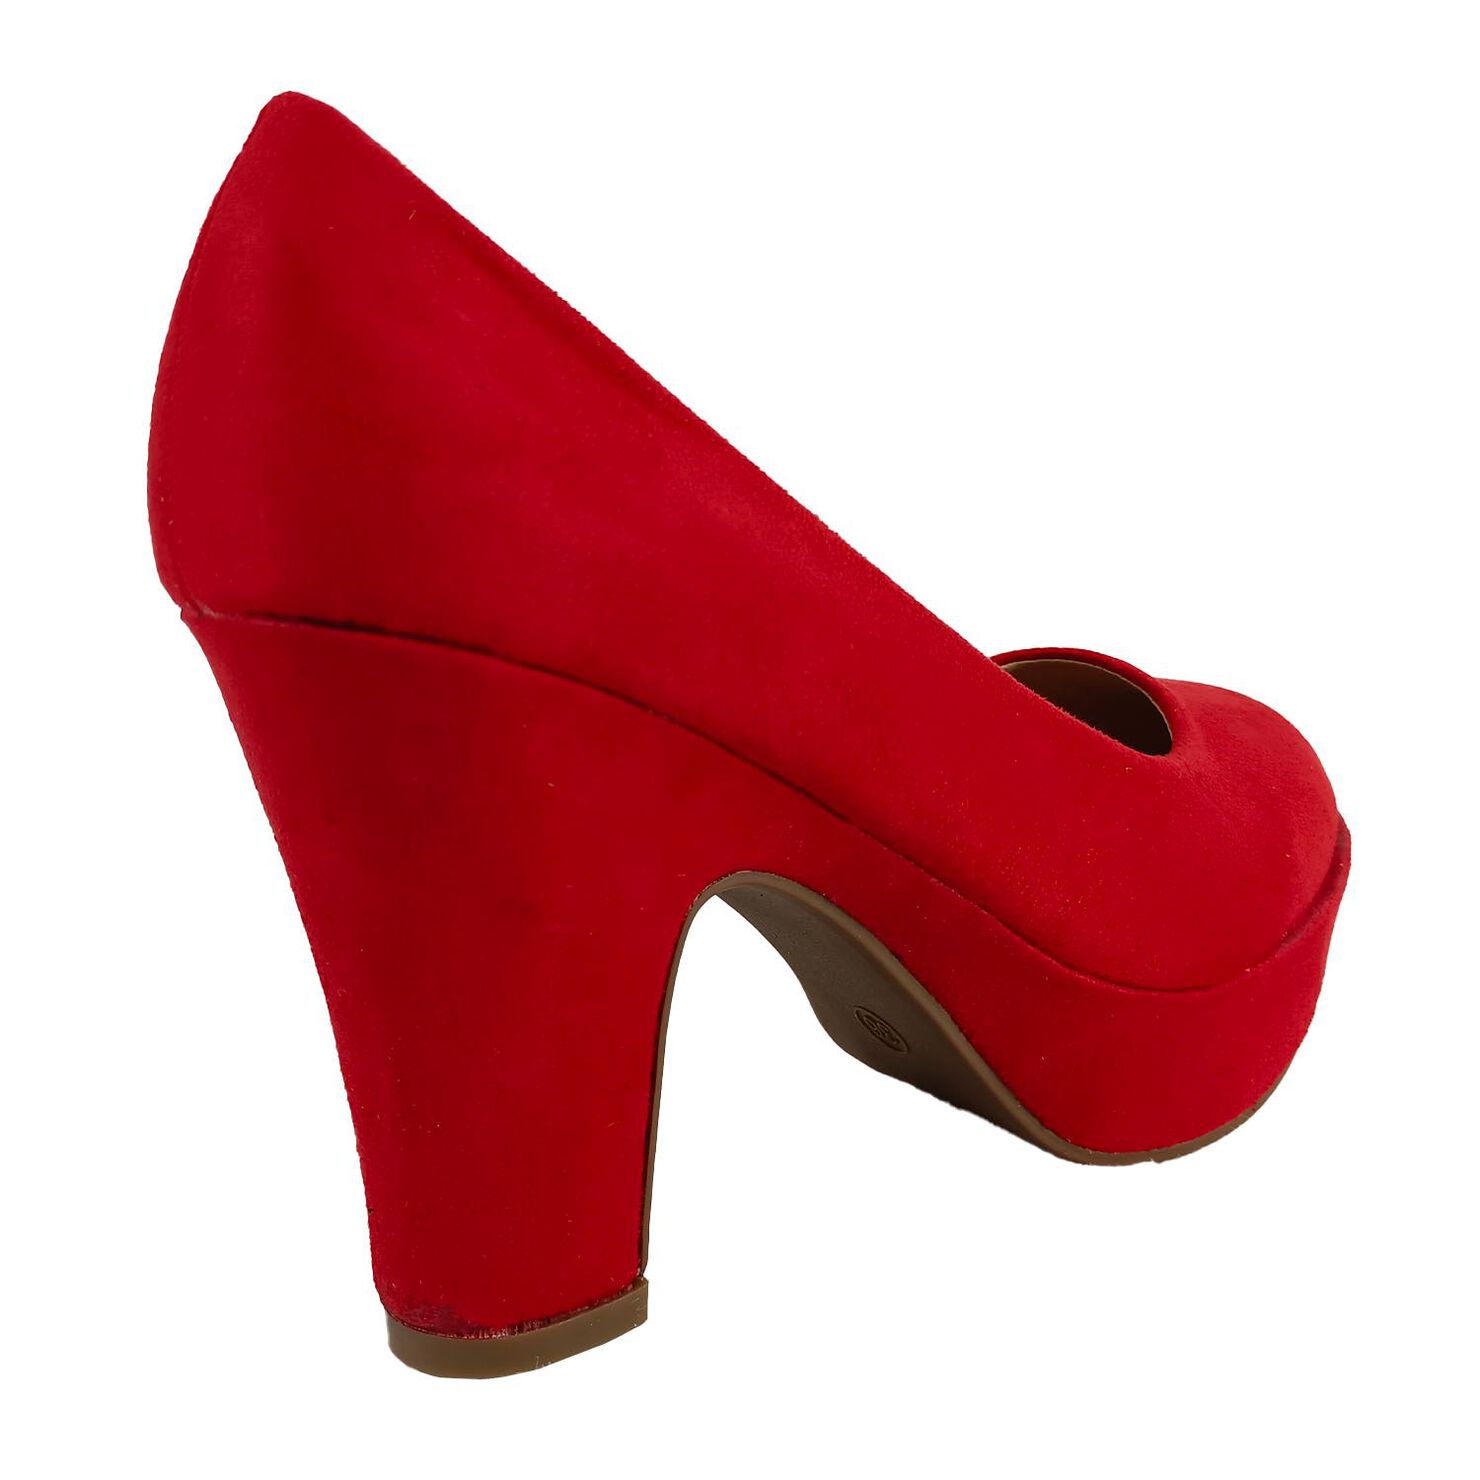 Zapato Mujer Taco Alto Cuadrado Rojo - Zapatos Mujer Paris.cl